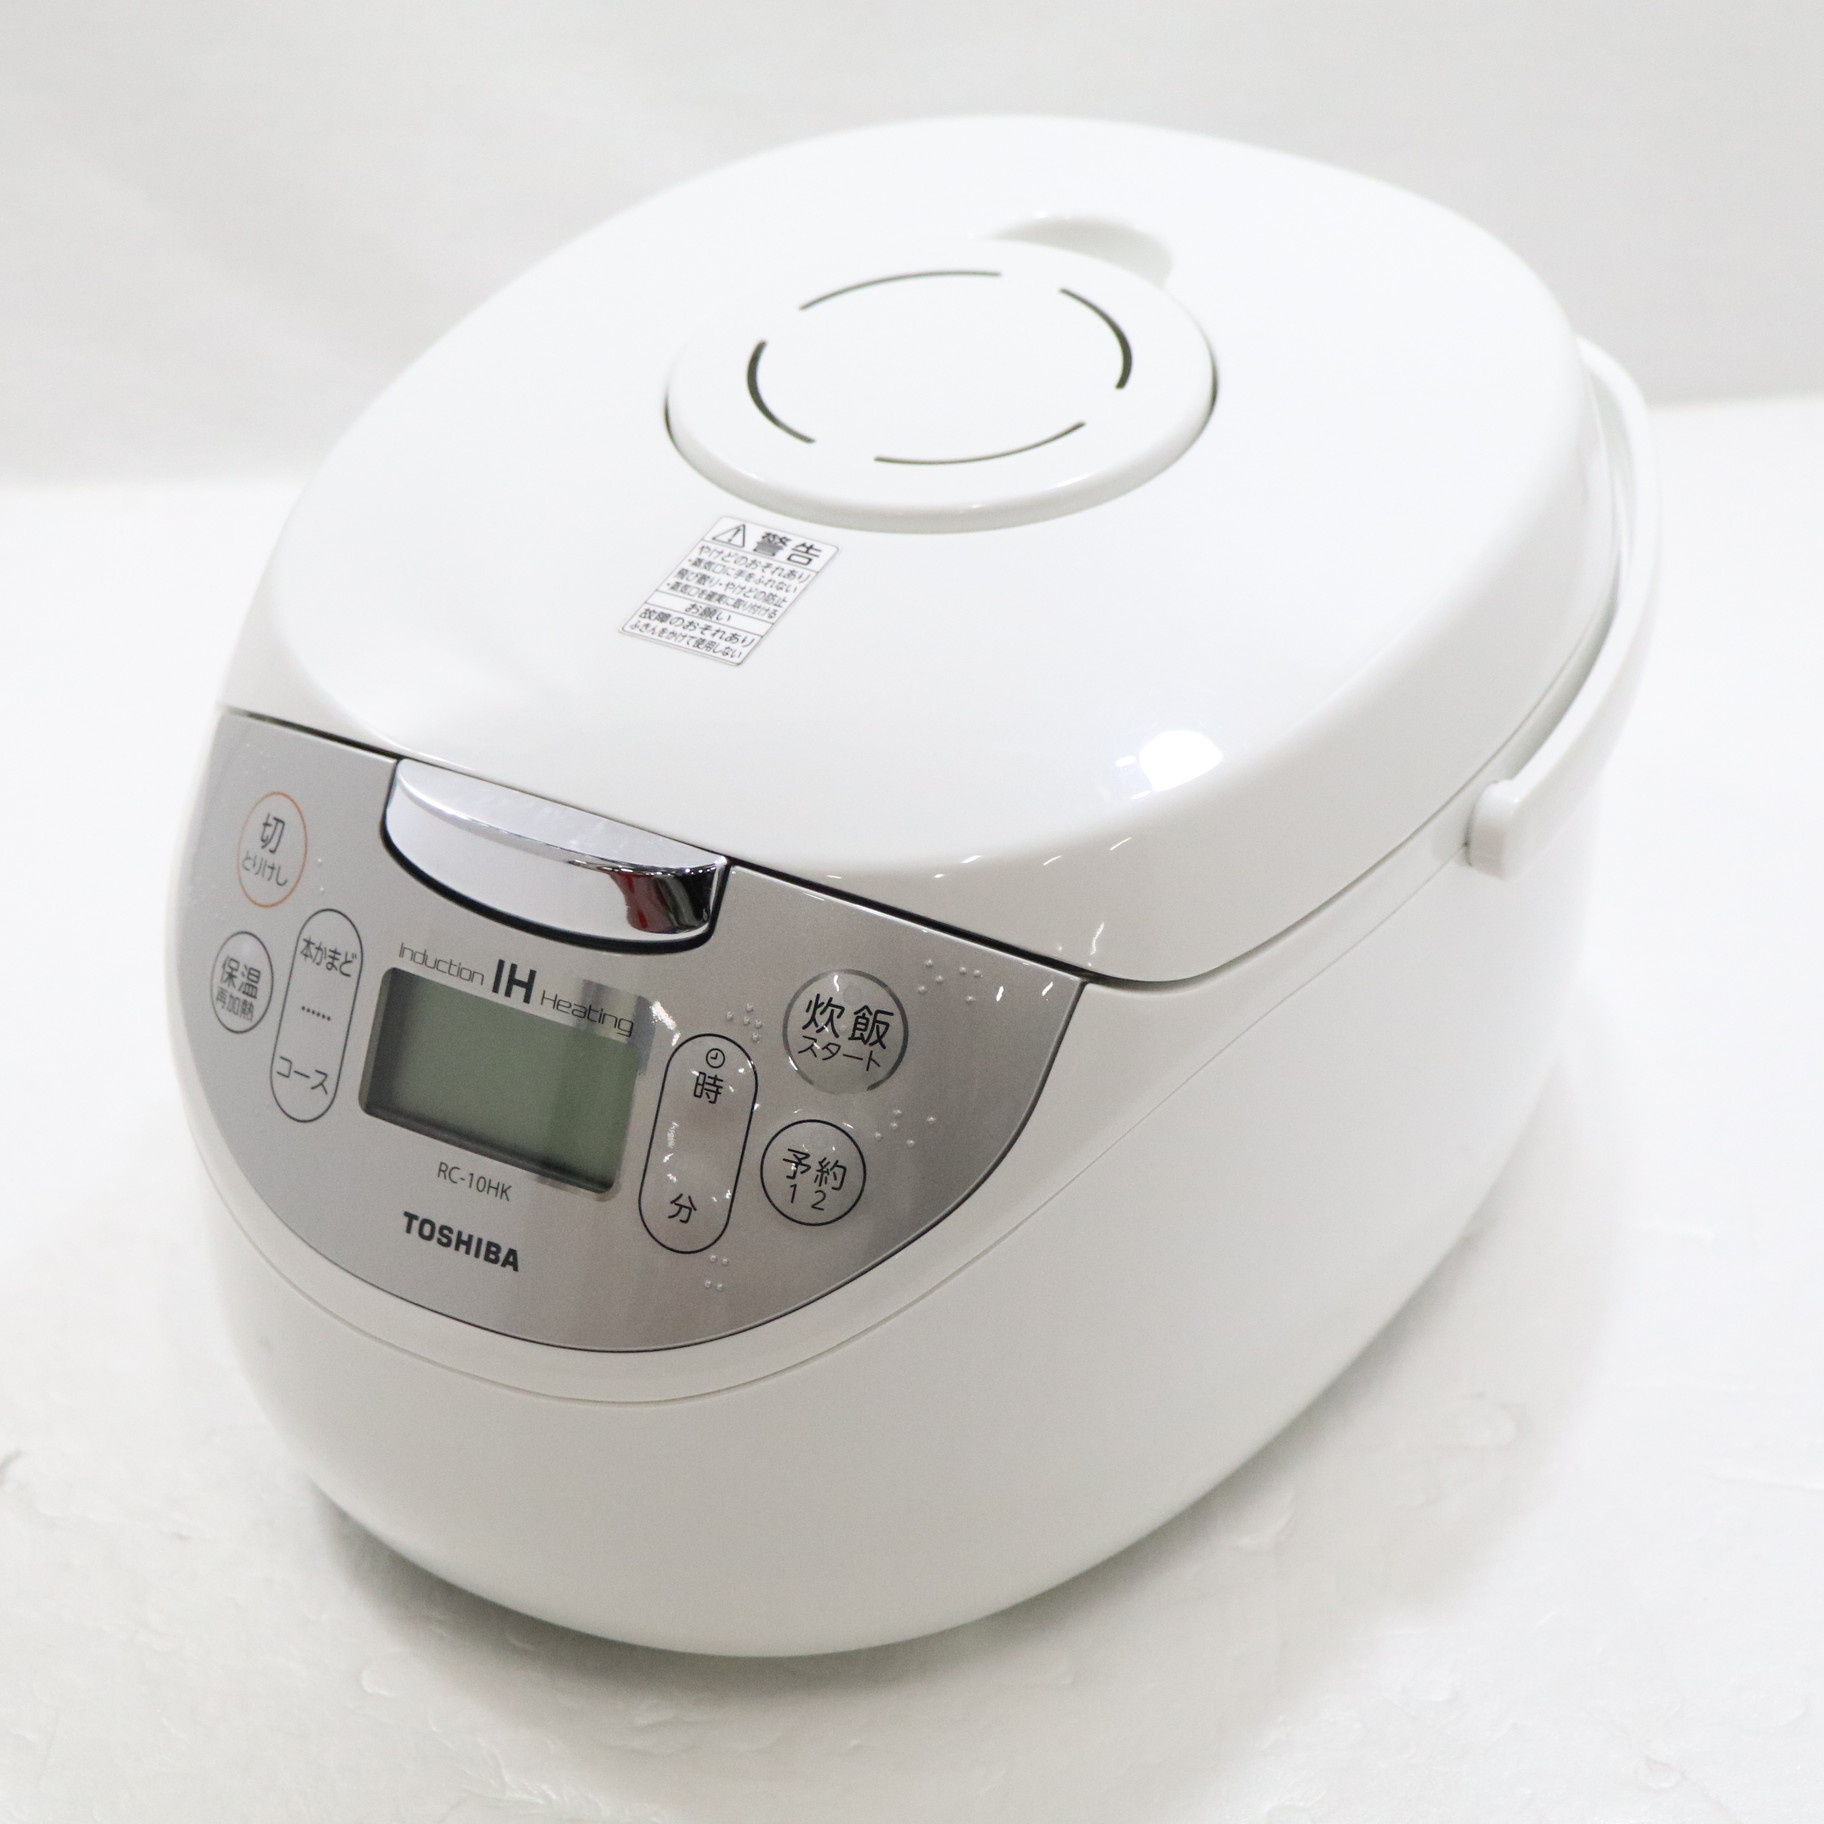 【未開封】TOSHIBA IHジャー炊飯器　RC-10HK(W) 5.5合炊き